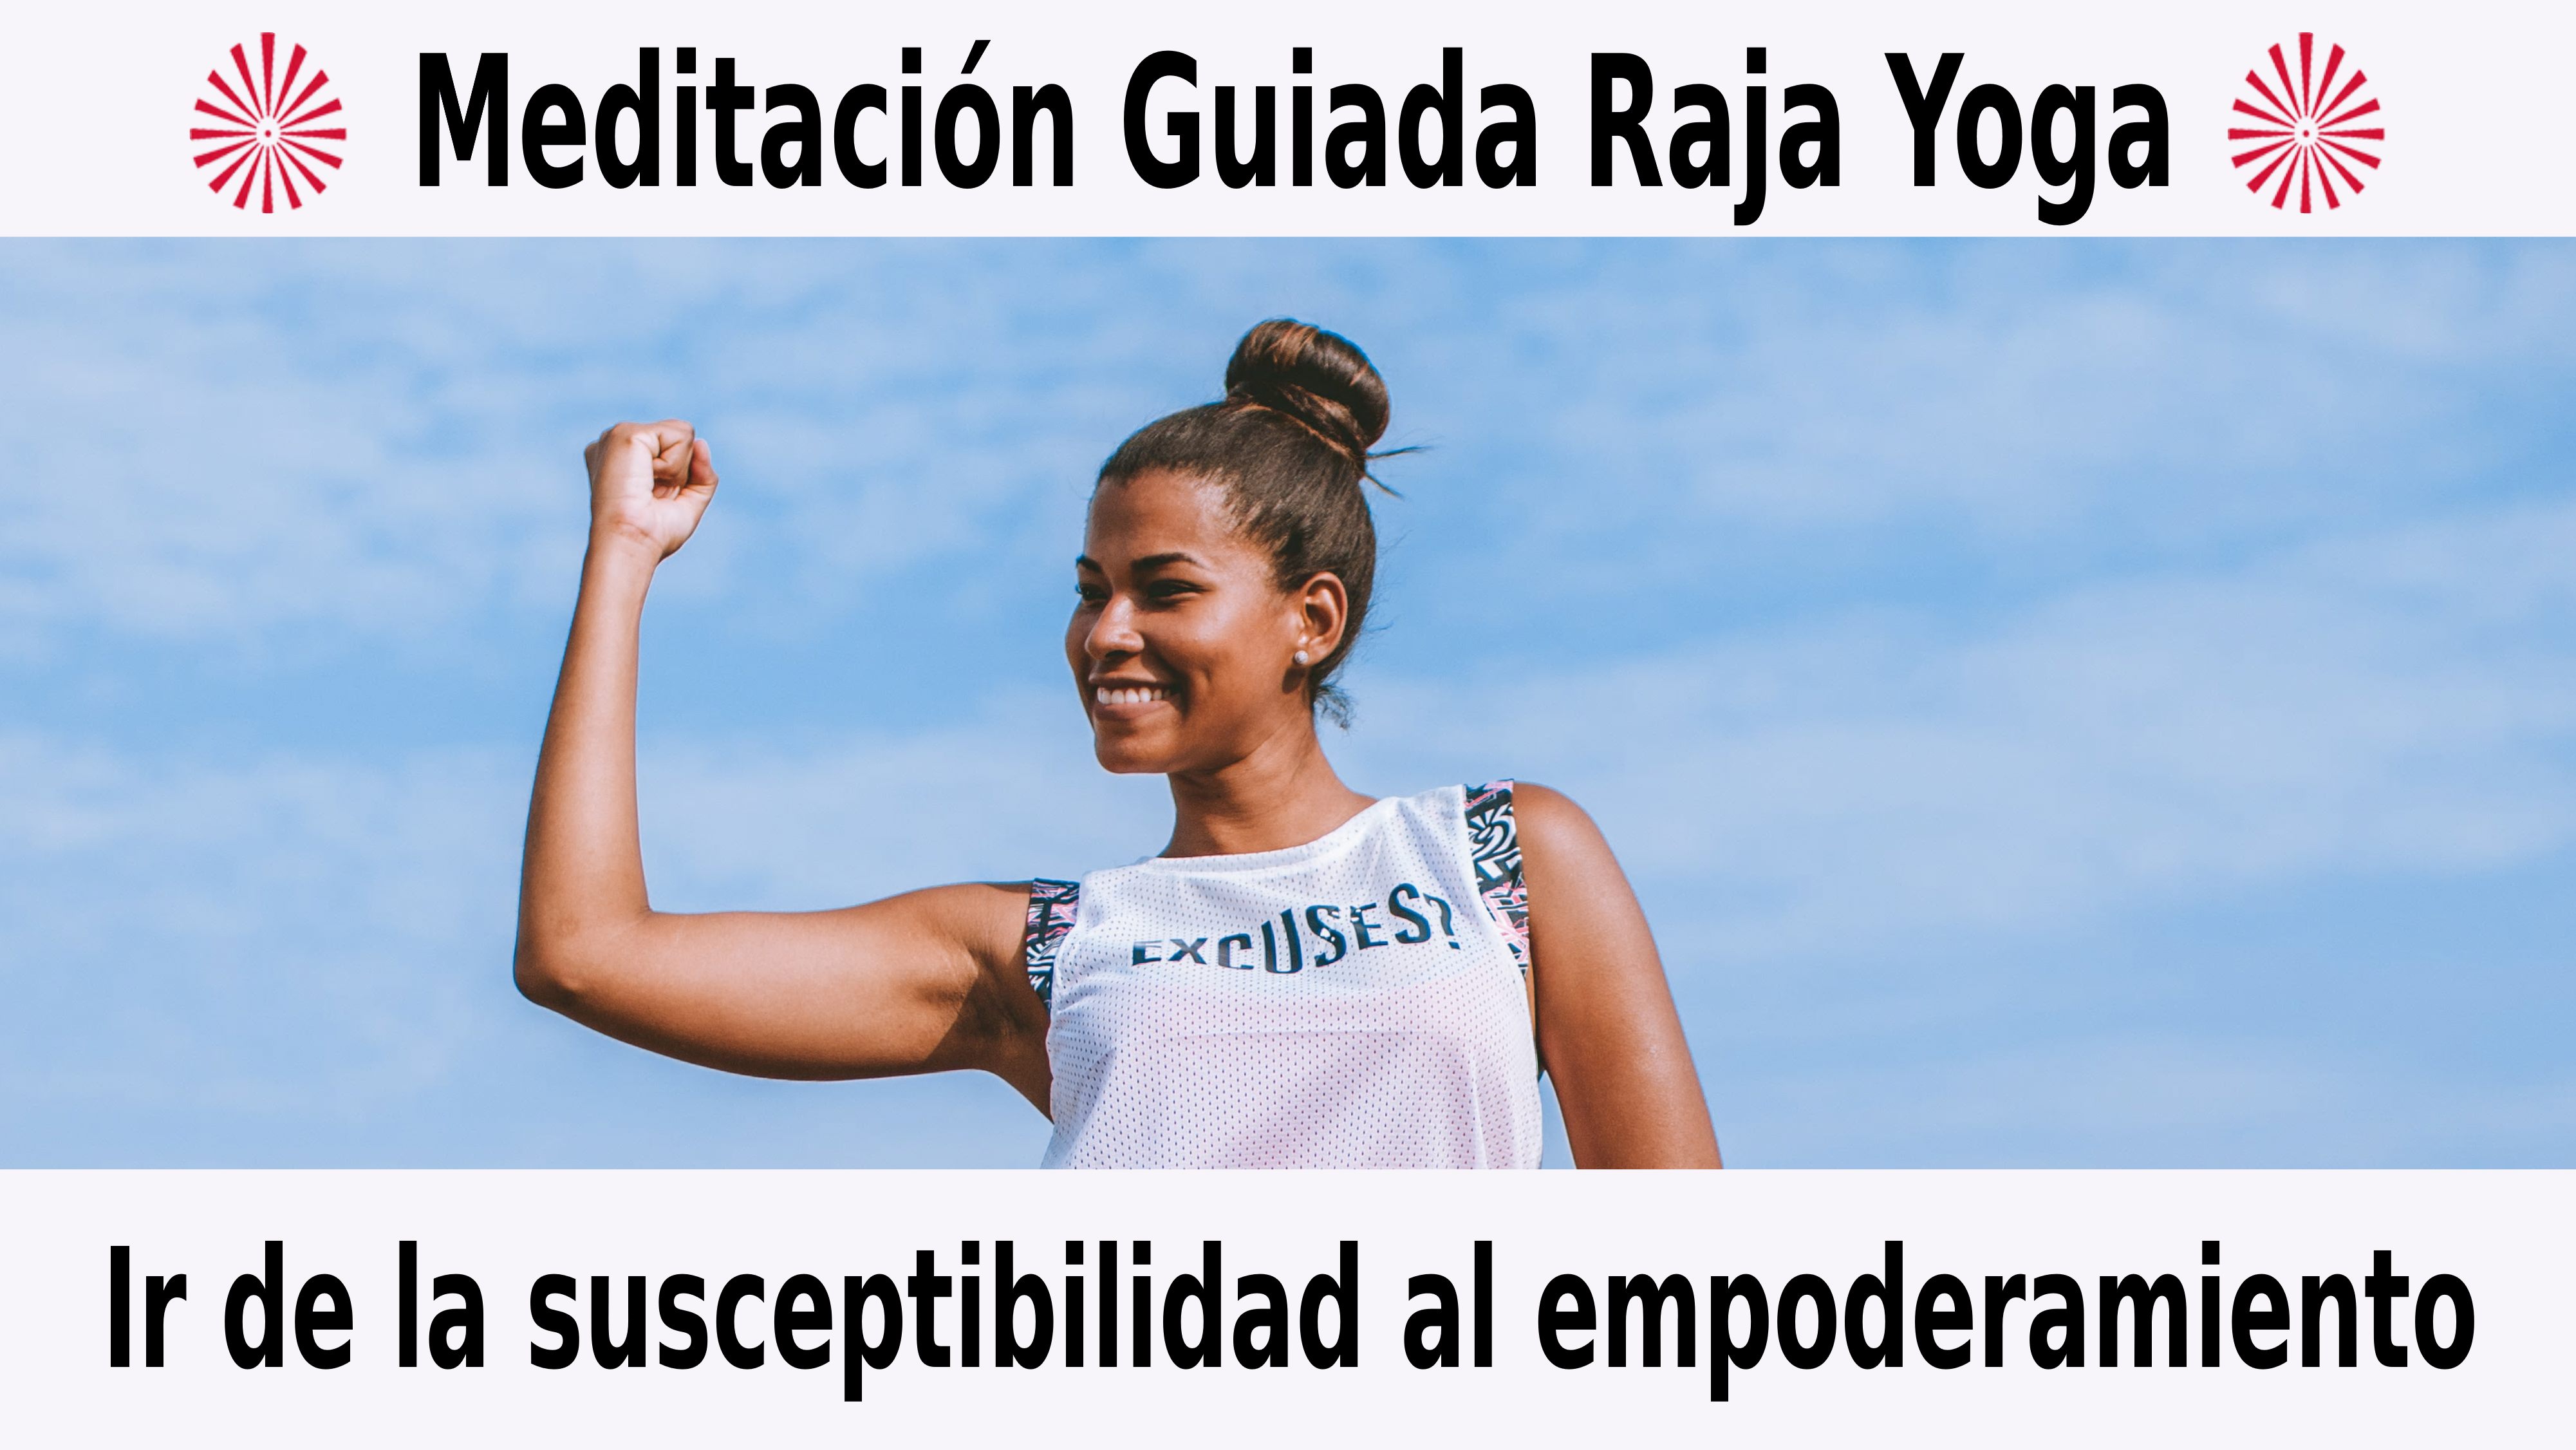 Meditación Raja Yoga: Ir de la susceptibilidad al empoderamiento (5 Noviembre 2020) On-line desde Barcelona